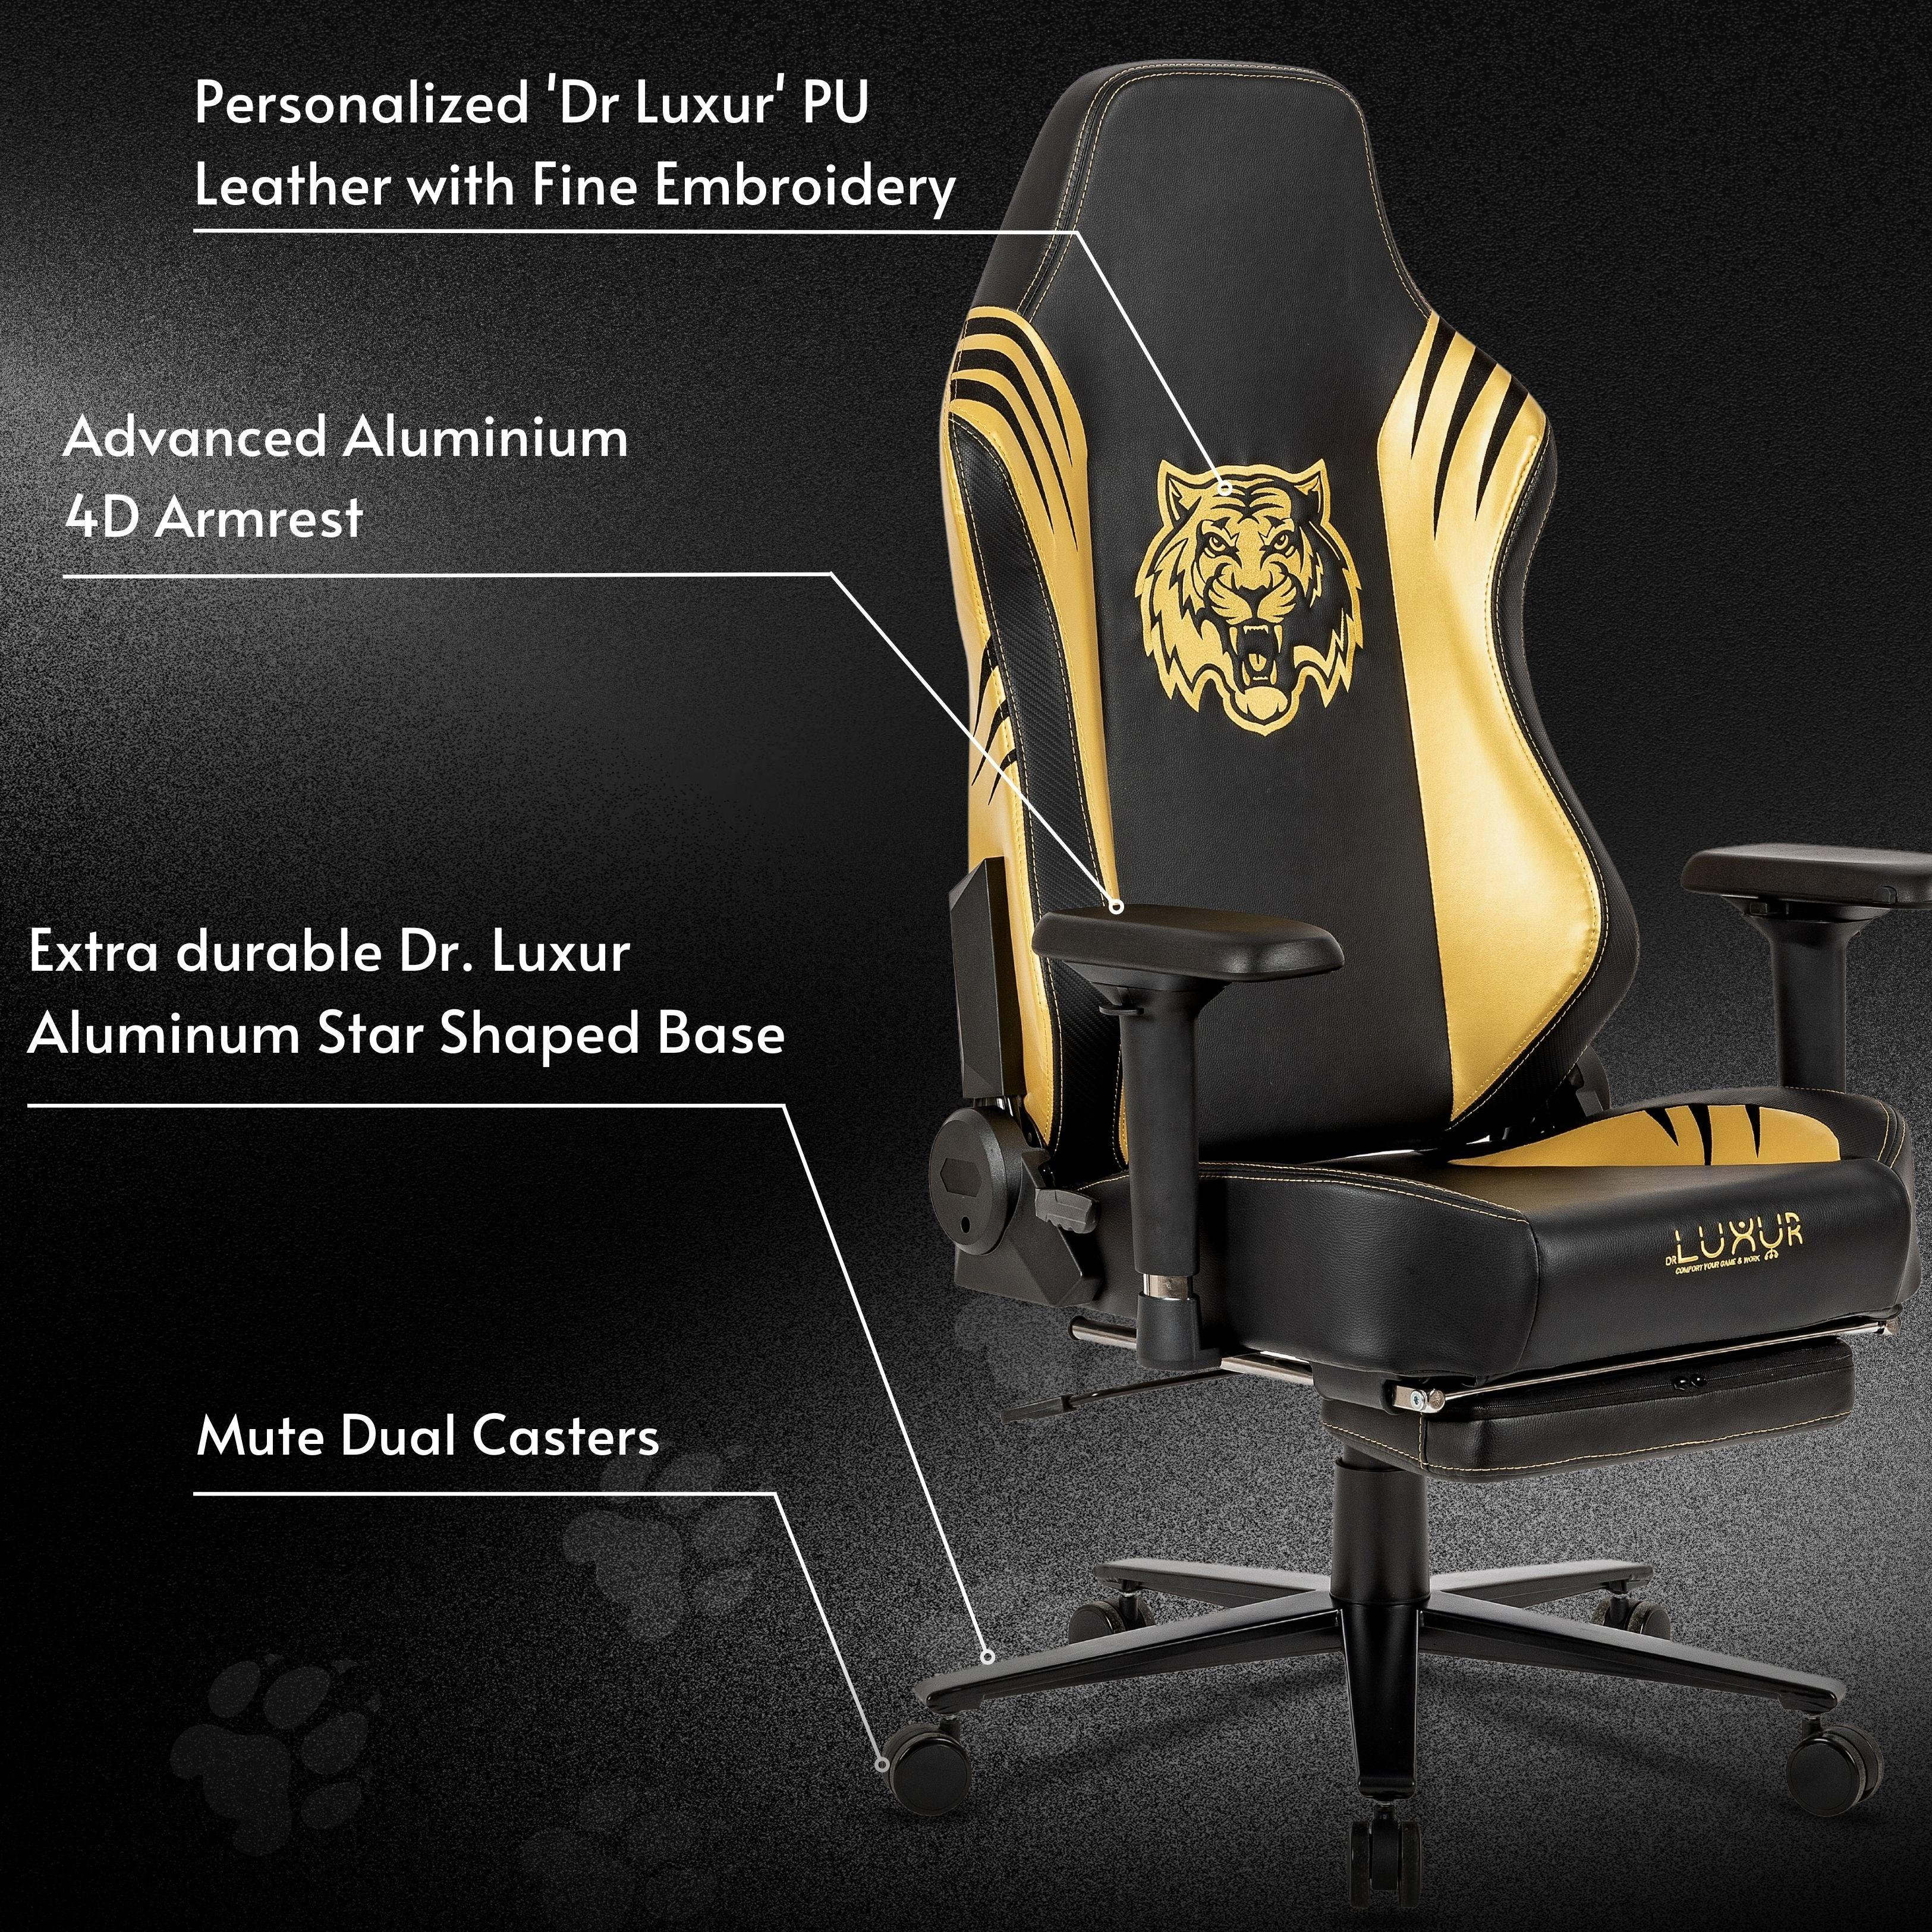 DrLuxur Predator Gaming Chair - PRE ORDER - DrLuxur